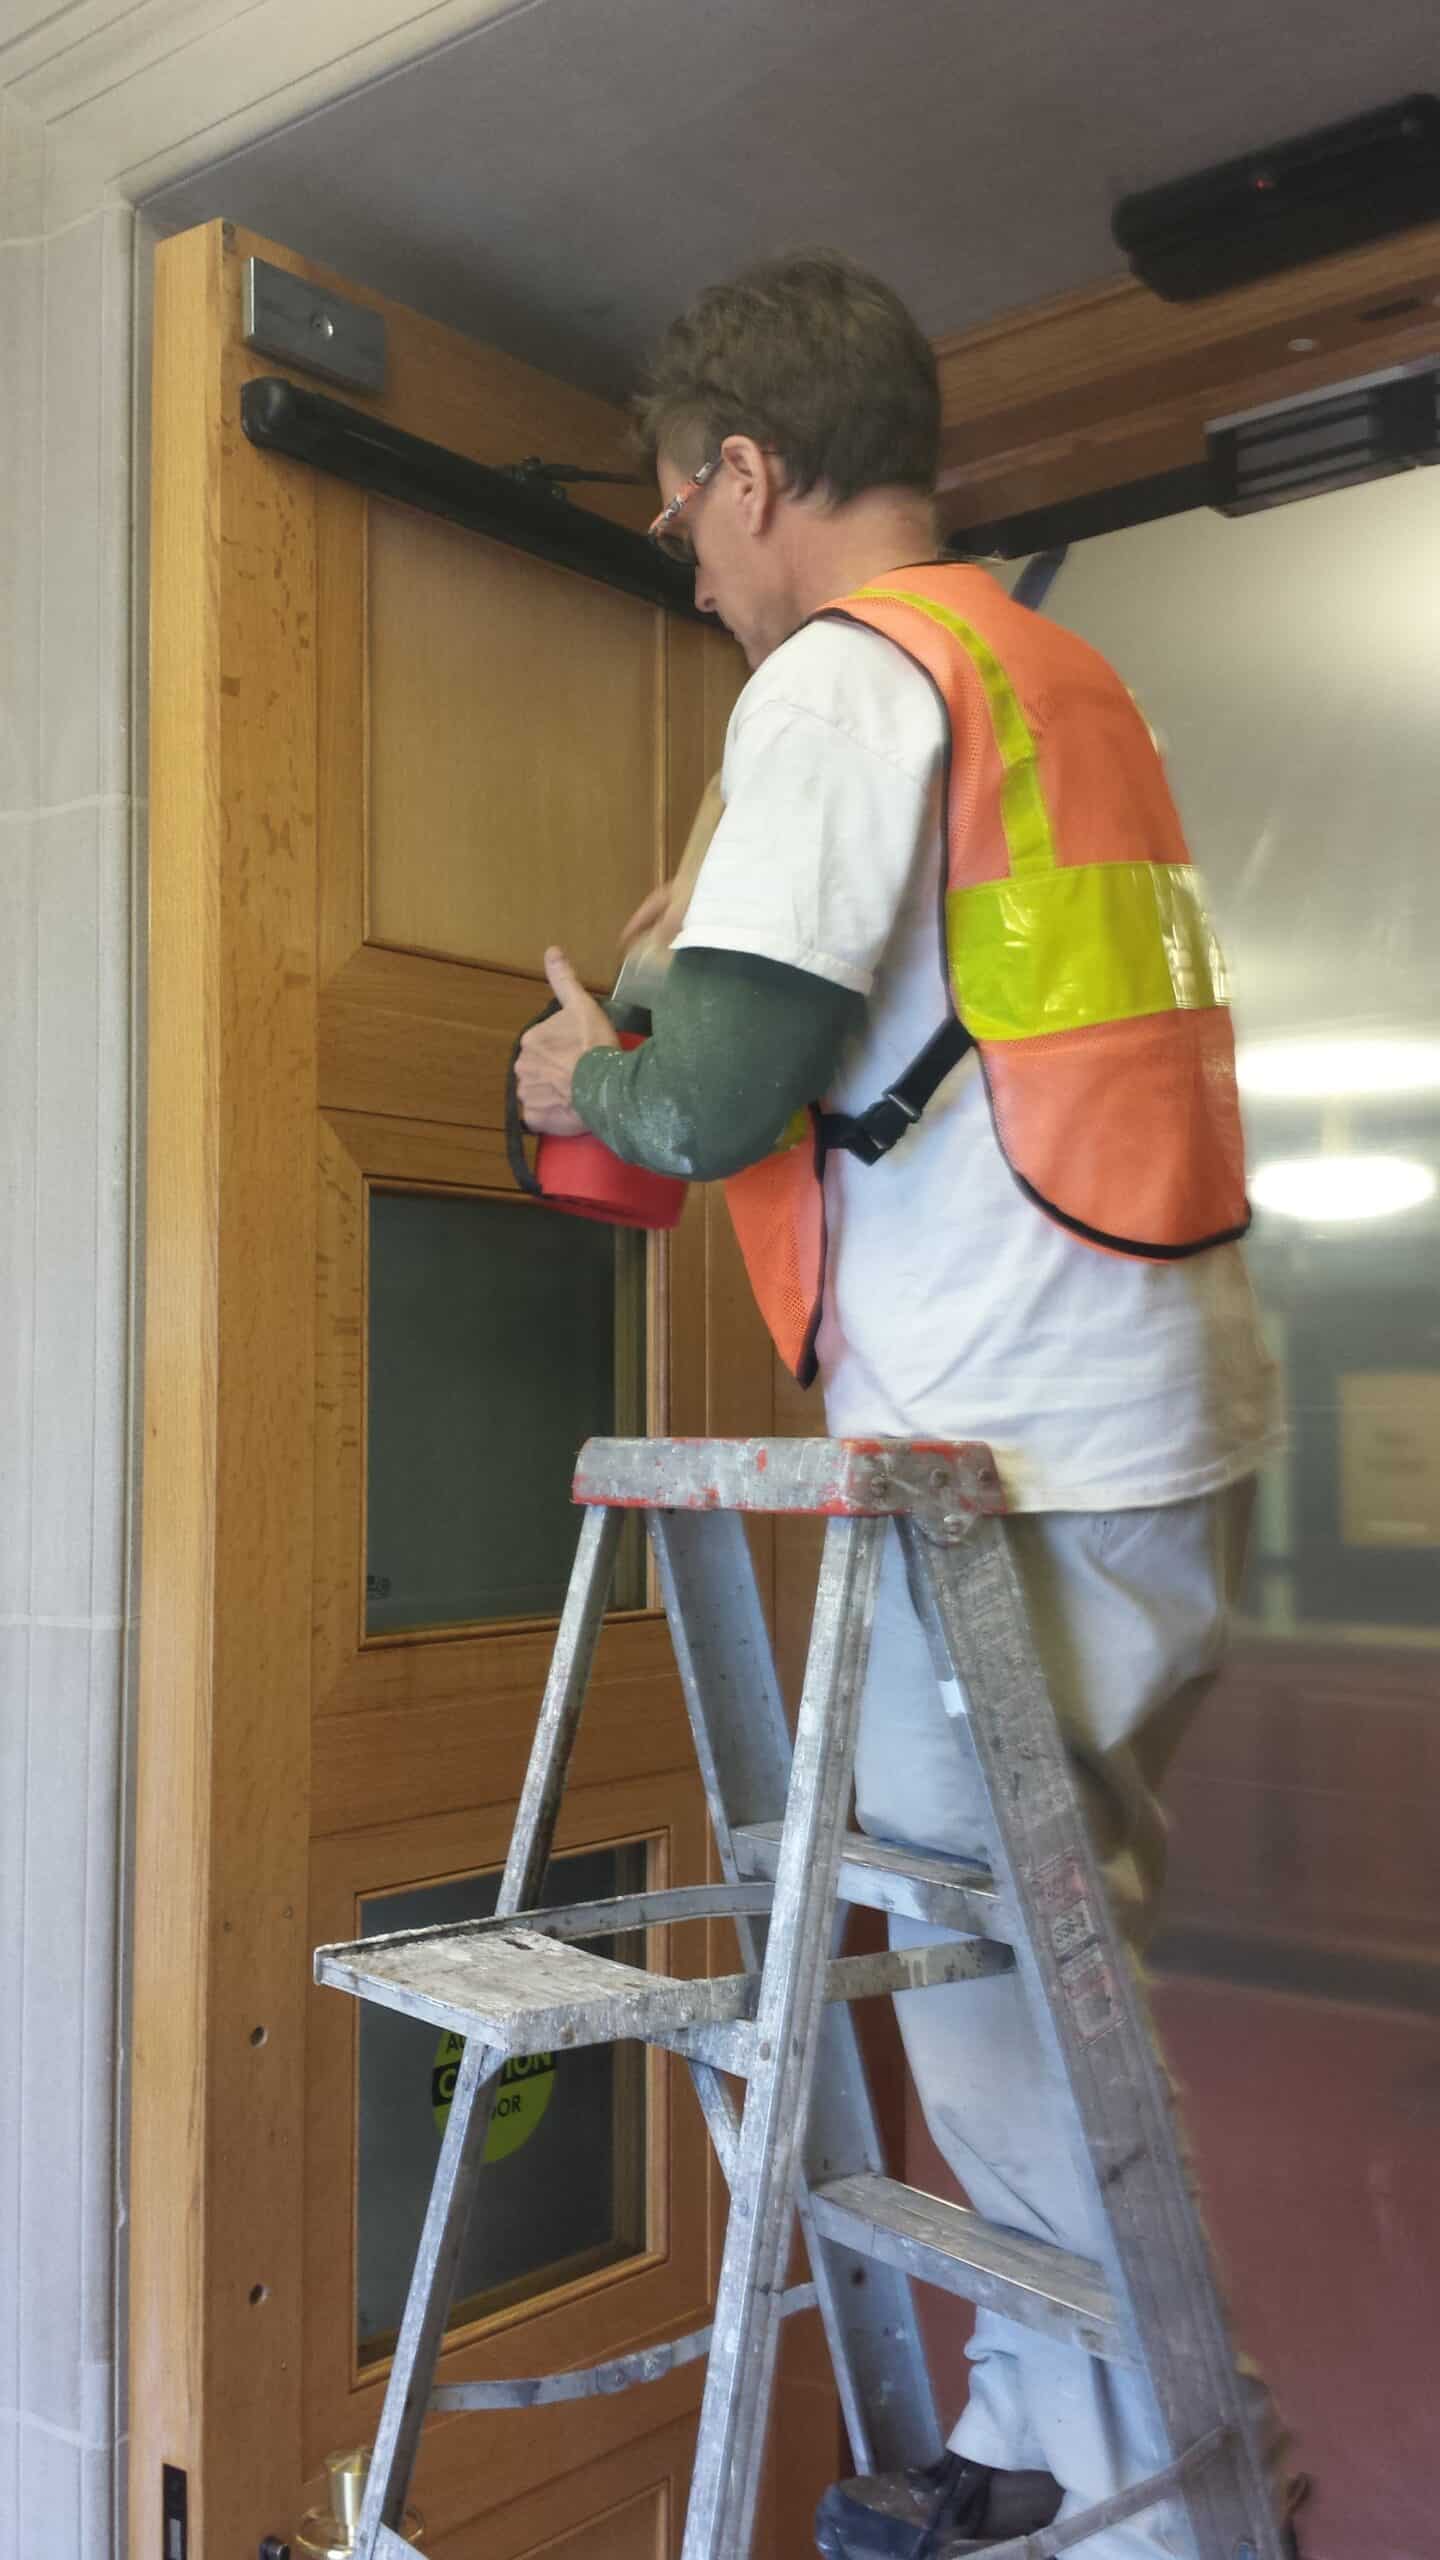 Washington Dc Painter working at Pentagon refinishing doors.